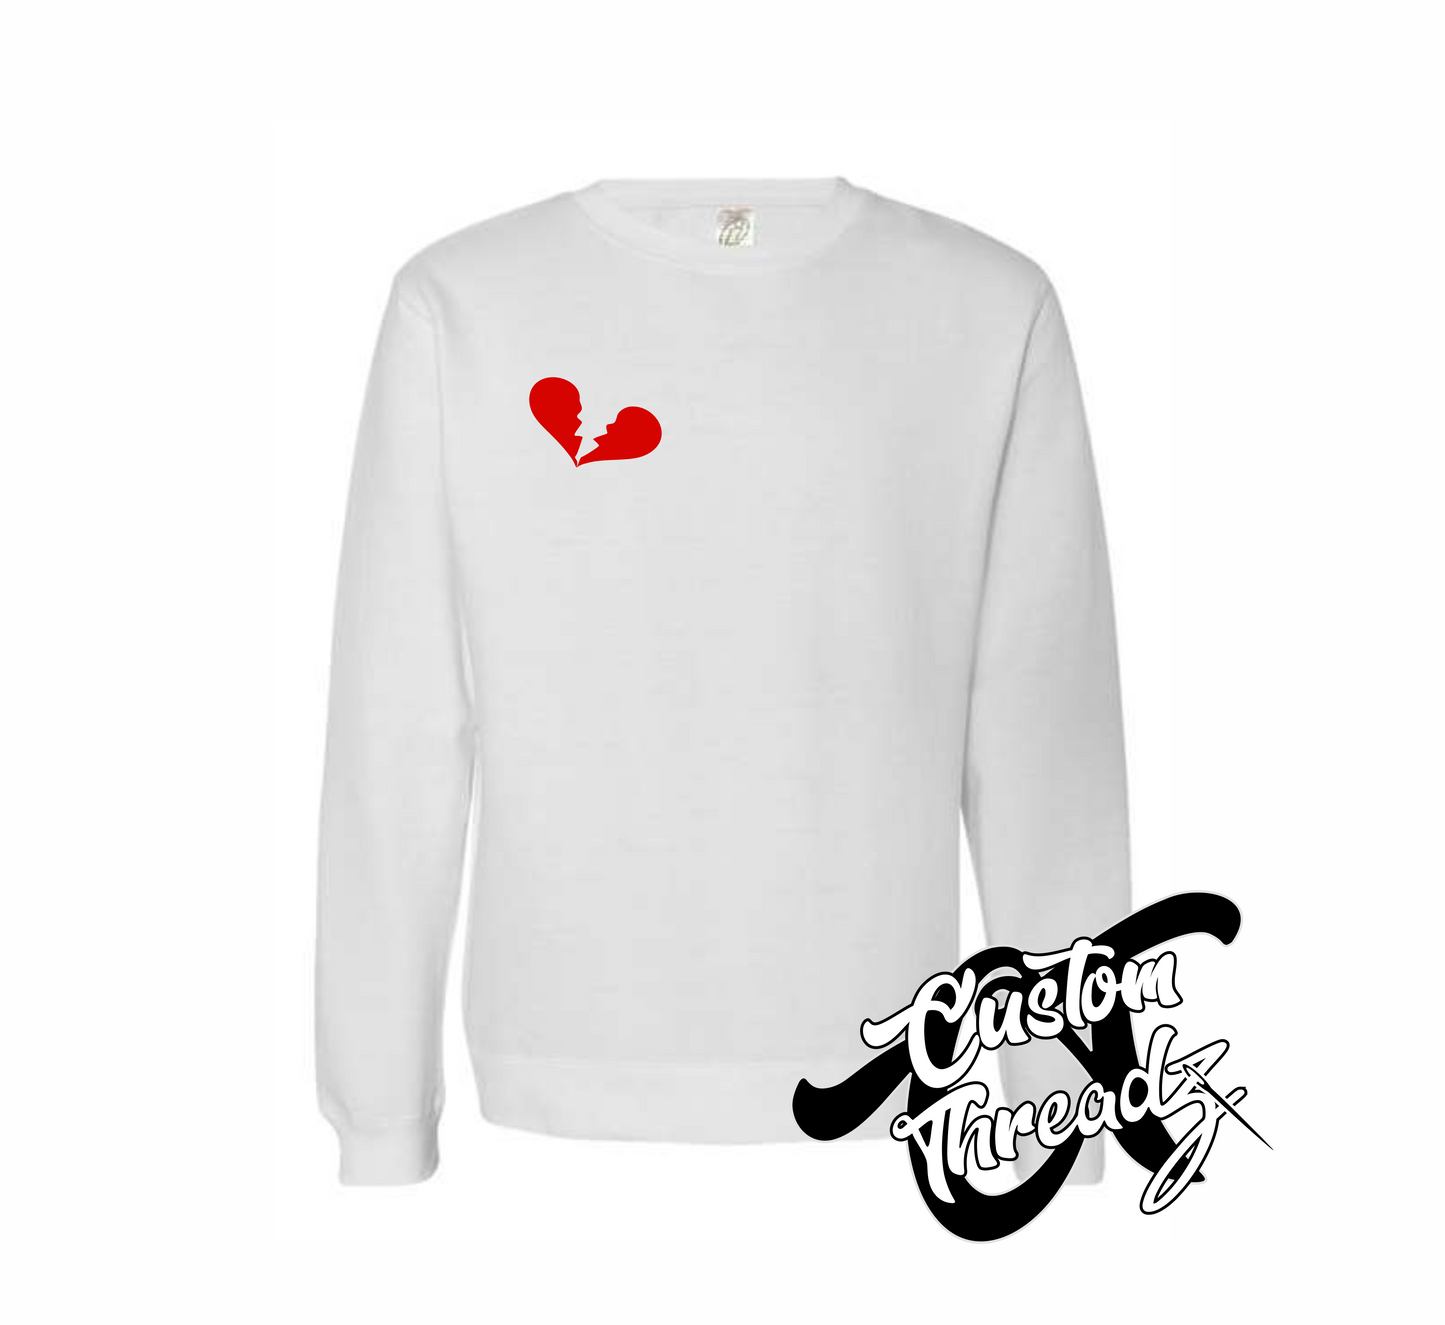 white crewneck sweatshirt with broken heart heartbreaker DTG printed design